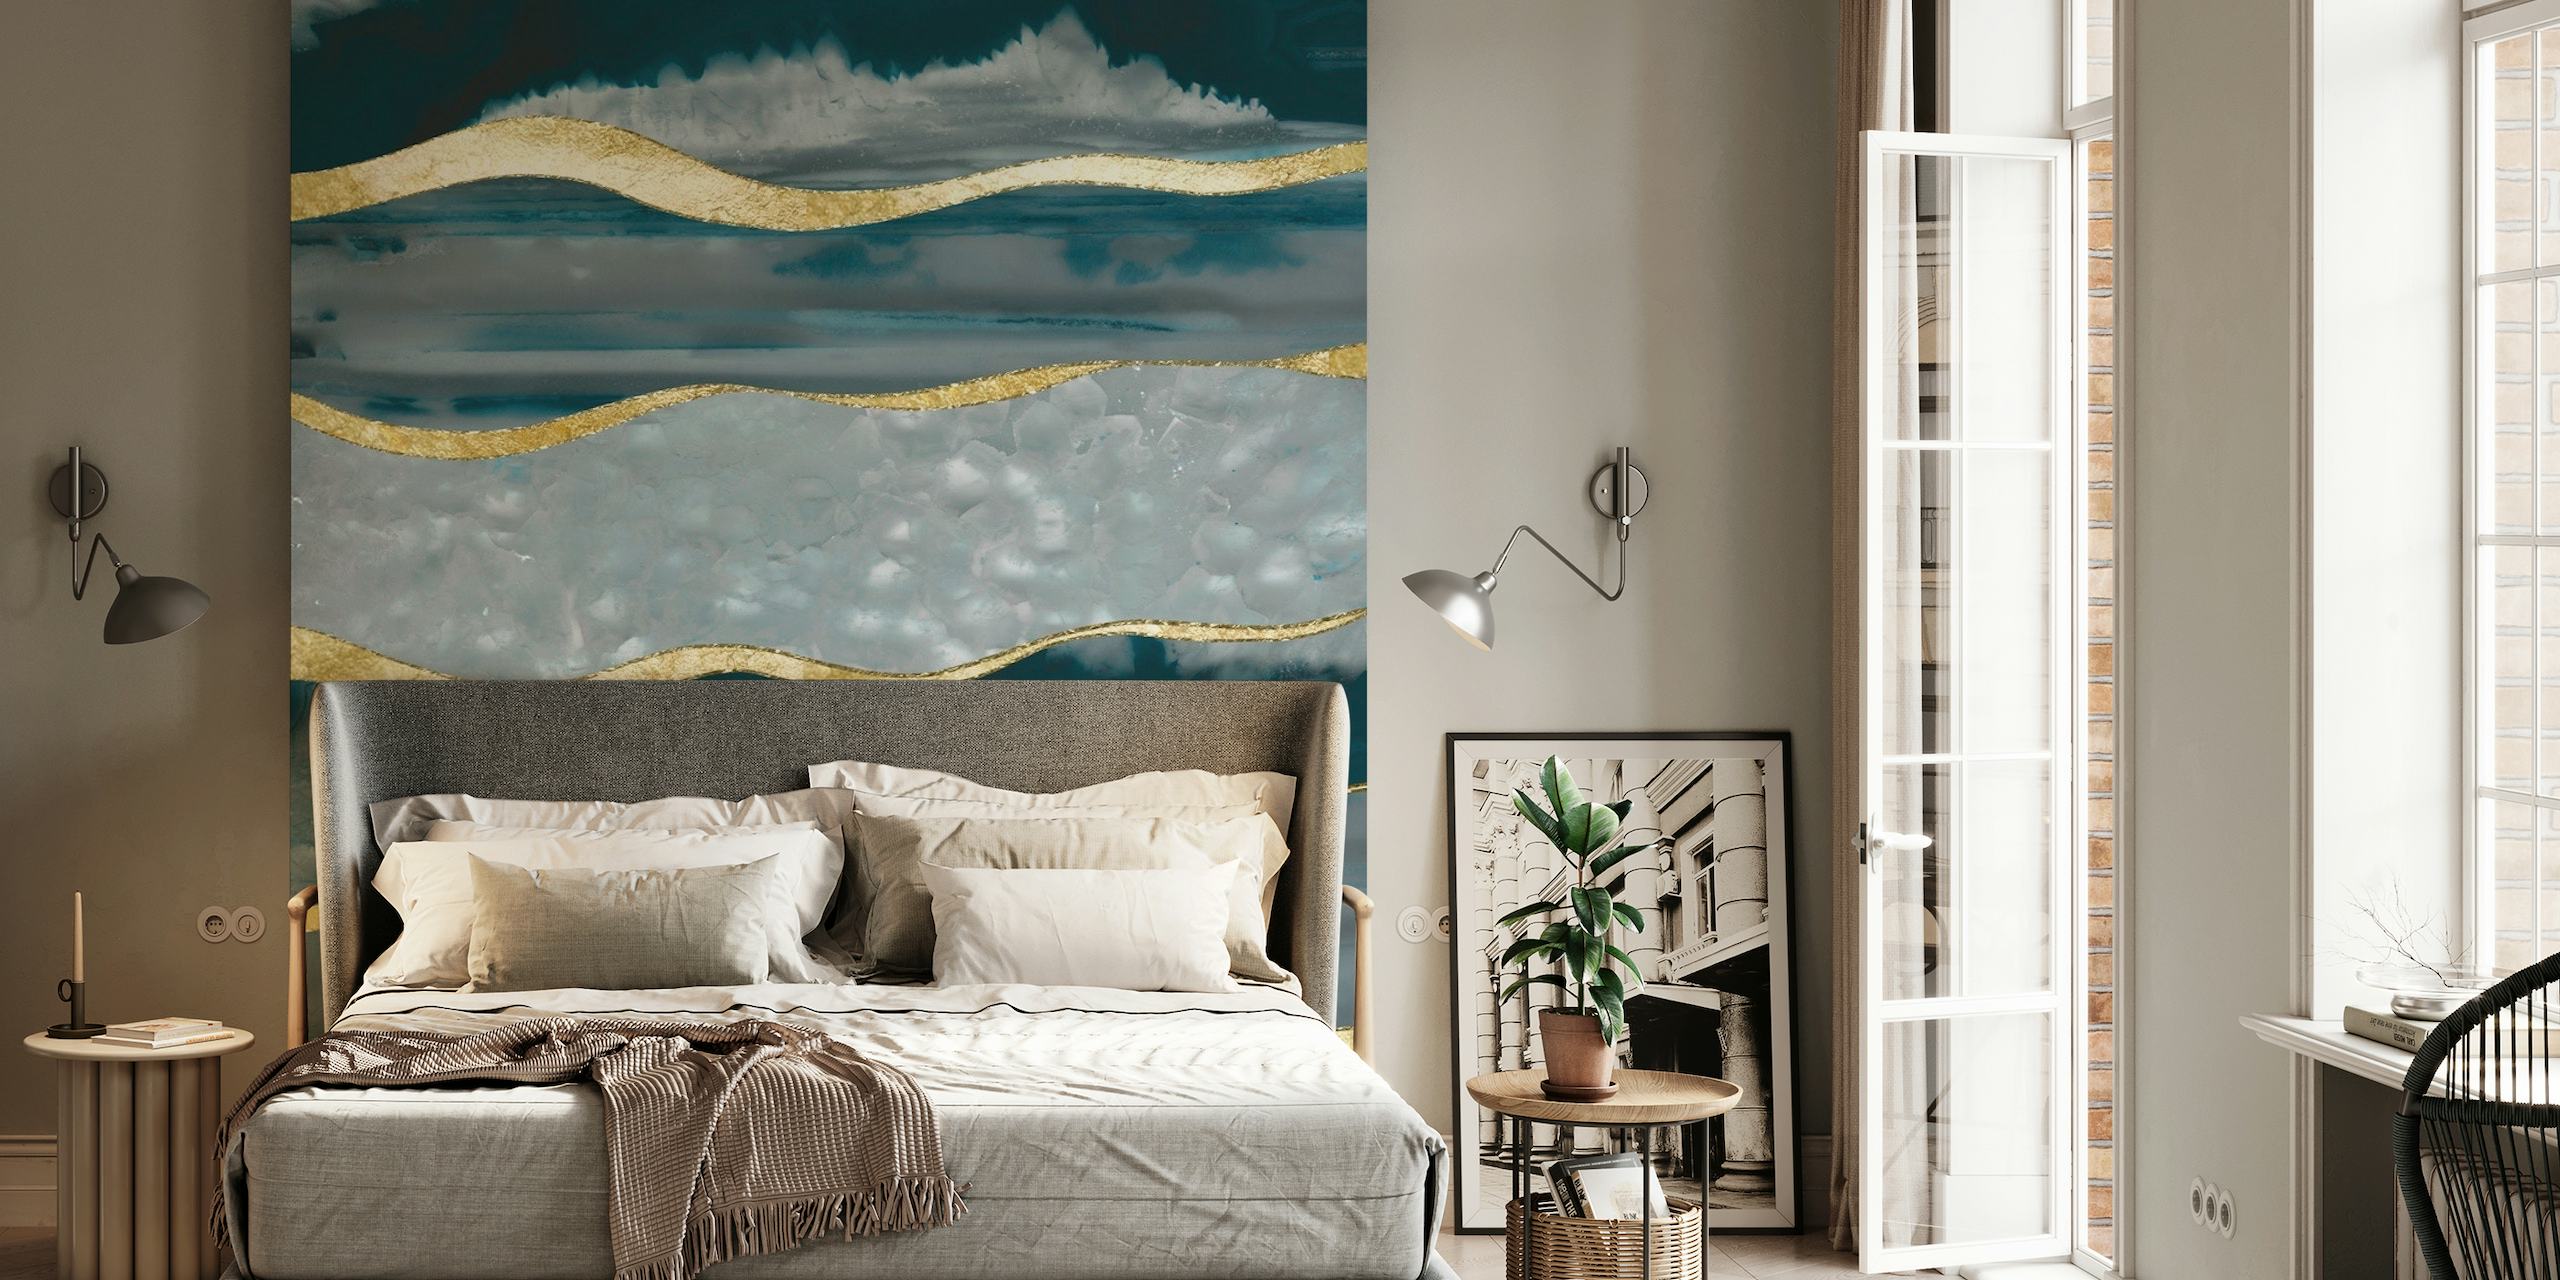 Blauwgroen en gouden agaat-geïnspireerde muurschildering met luxe strepen.